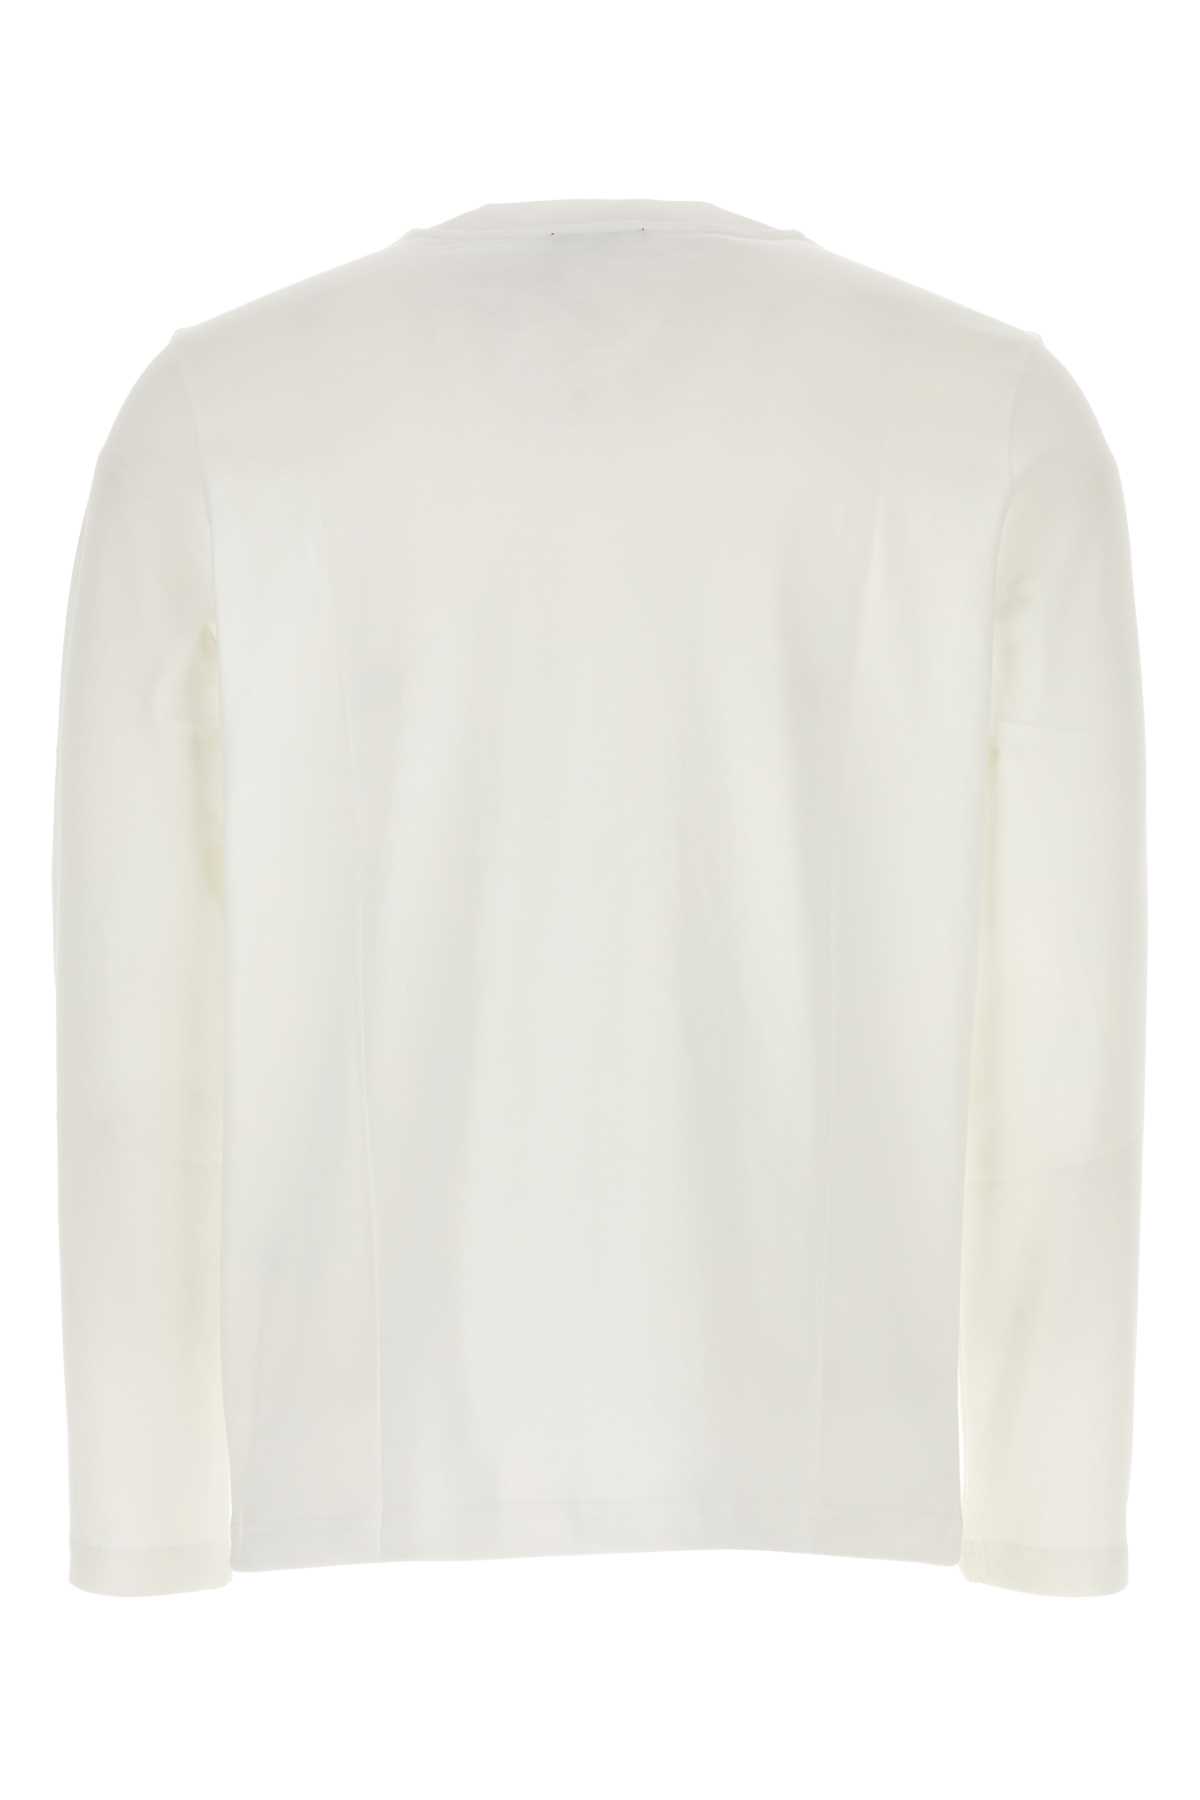 Shop Apc White Cotton Olivier T-shirt